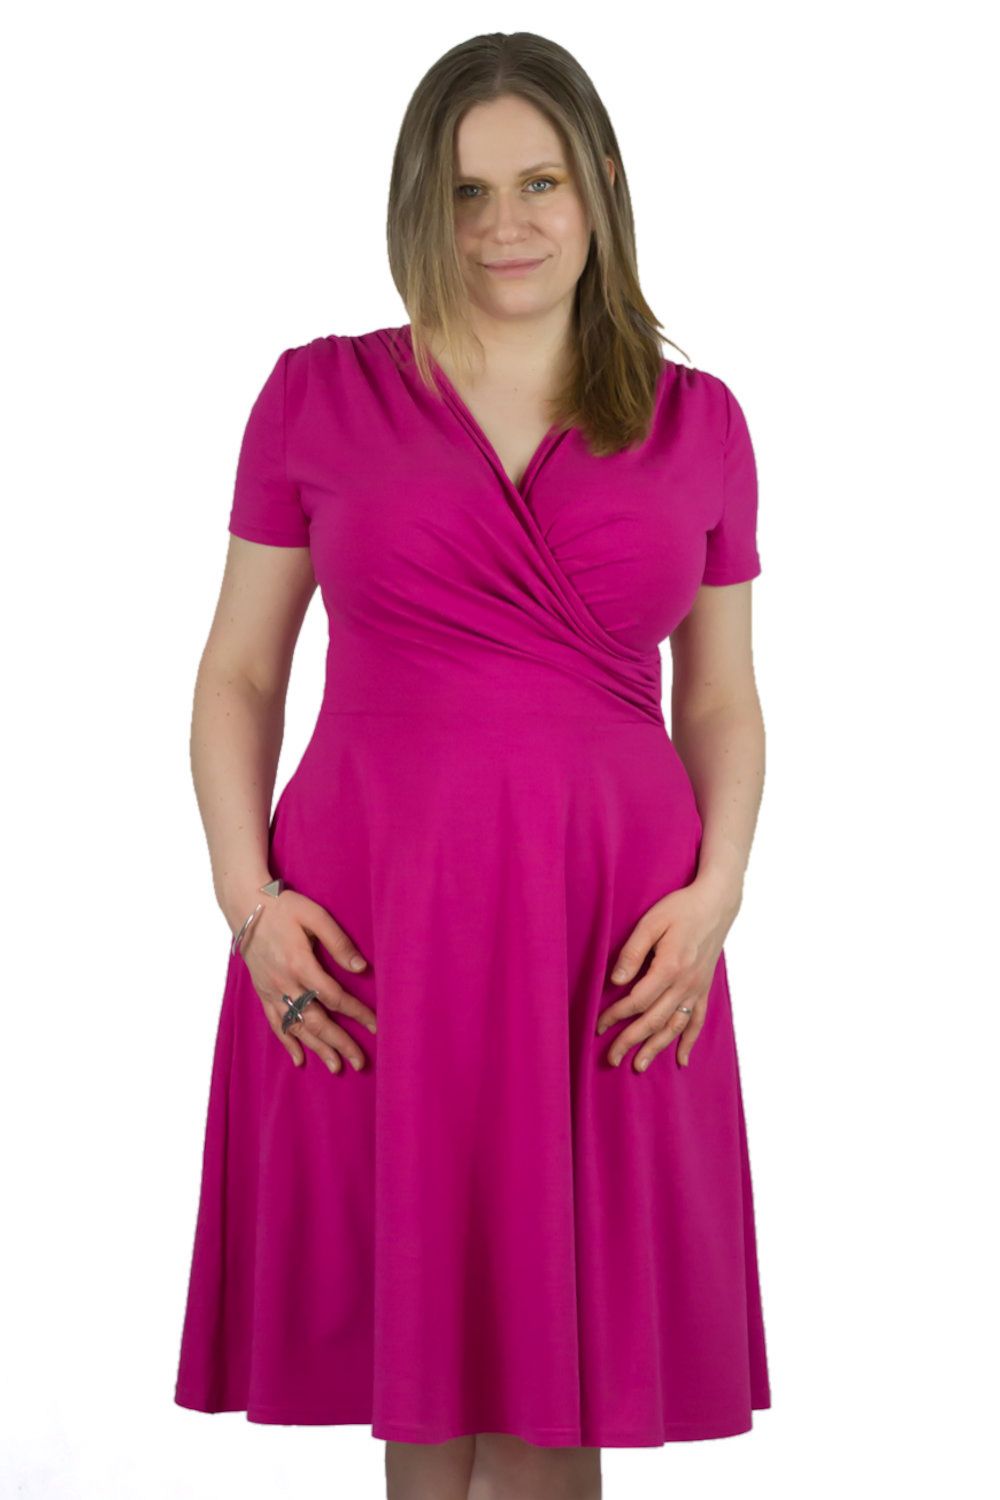 Urkye Koperta Dress with Short Sleeves Rose Violet